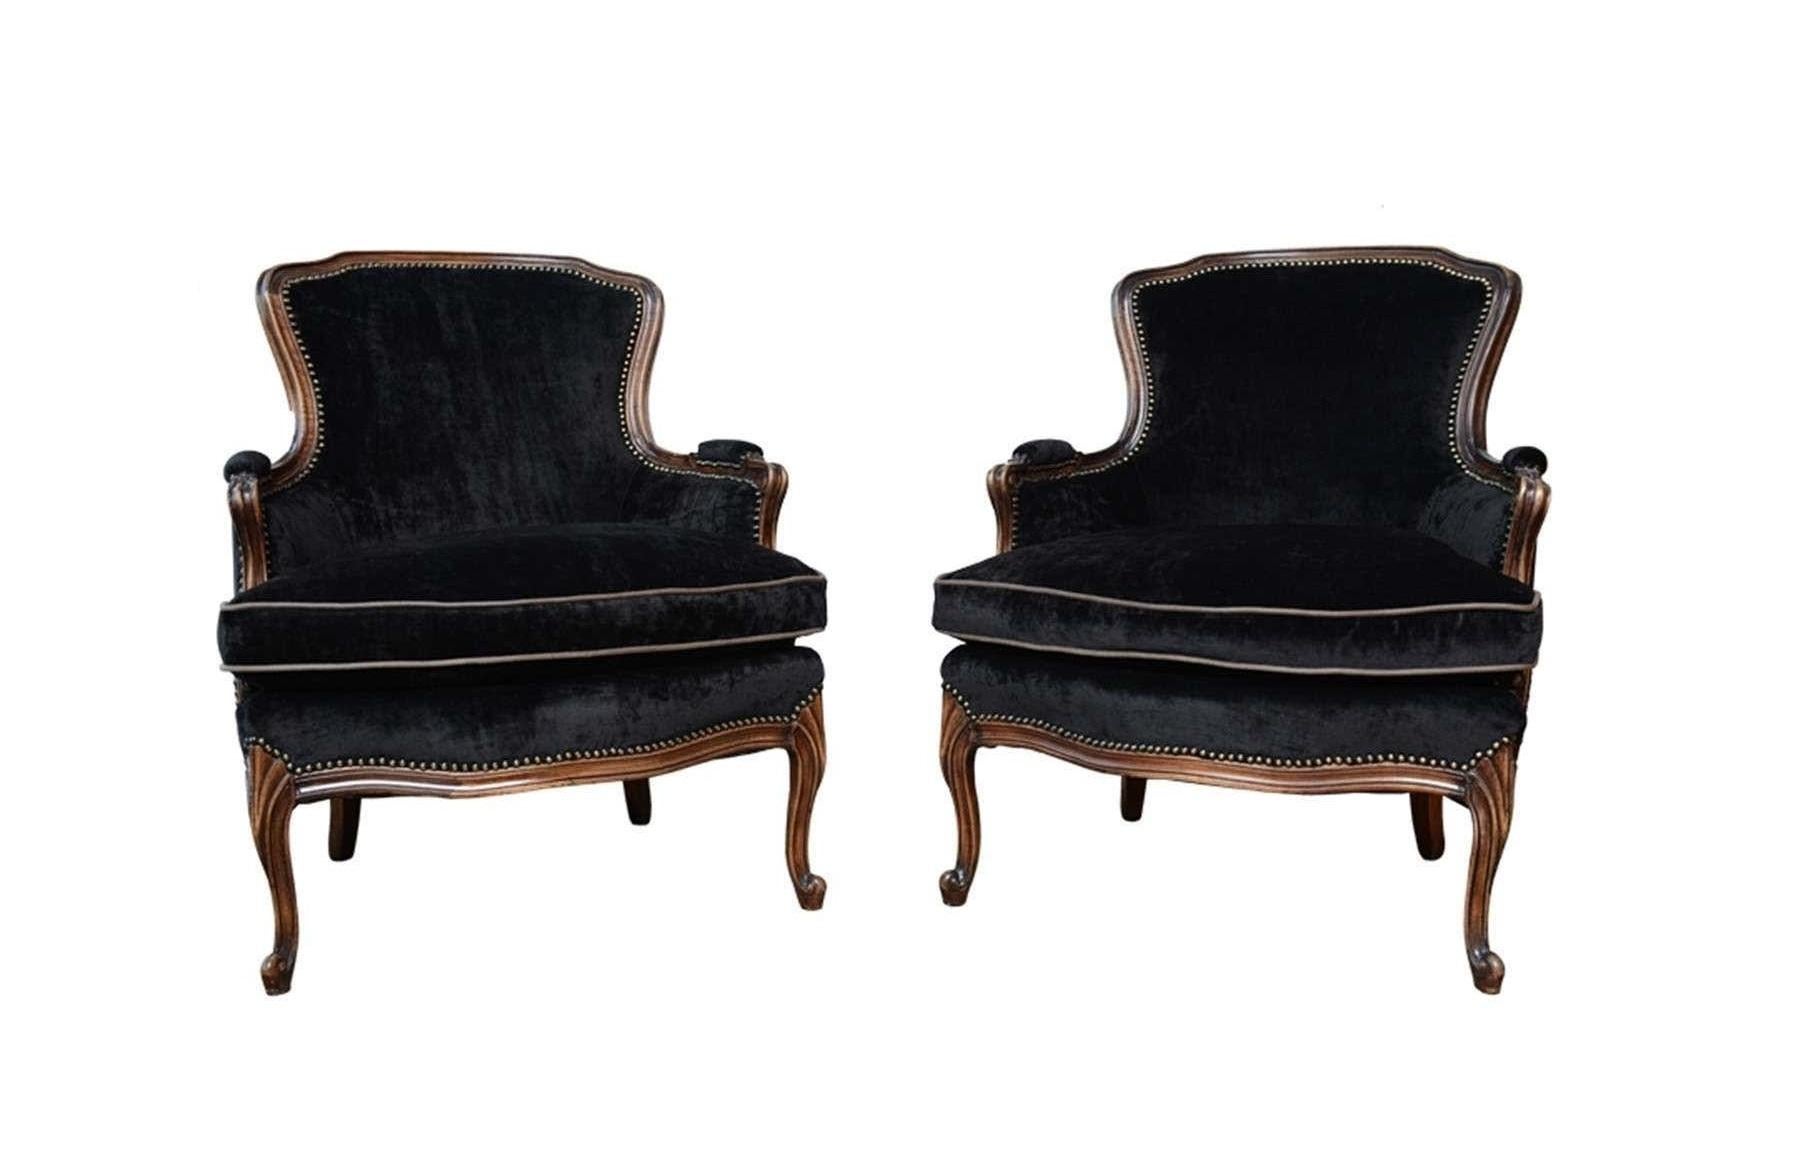 Une élégante paire de fauteuils anciens Louis XV tapissés. Fraîchement recouvert de velours noir, les bords sont ornés de têtes de clous et les cadres ont été remis à neuf dans une finition noyer foncé. Les chaises sont dotées d'un simple cimier